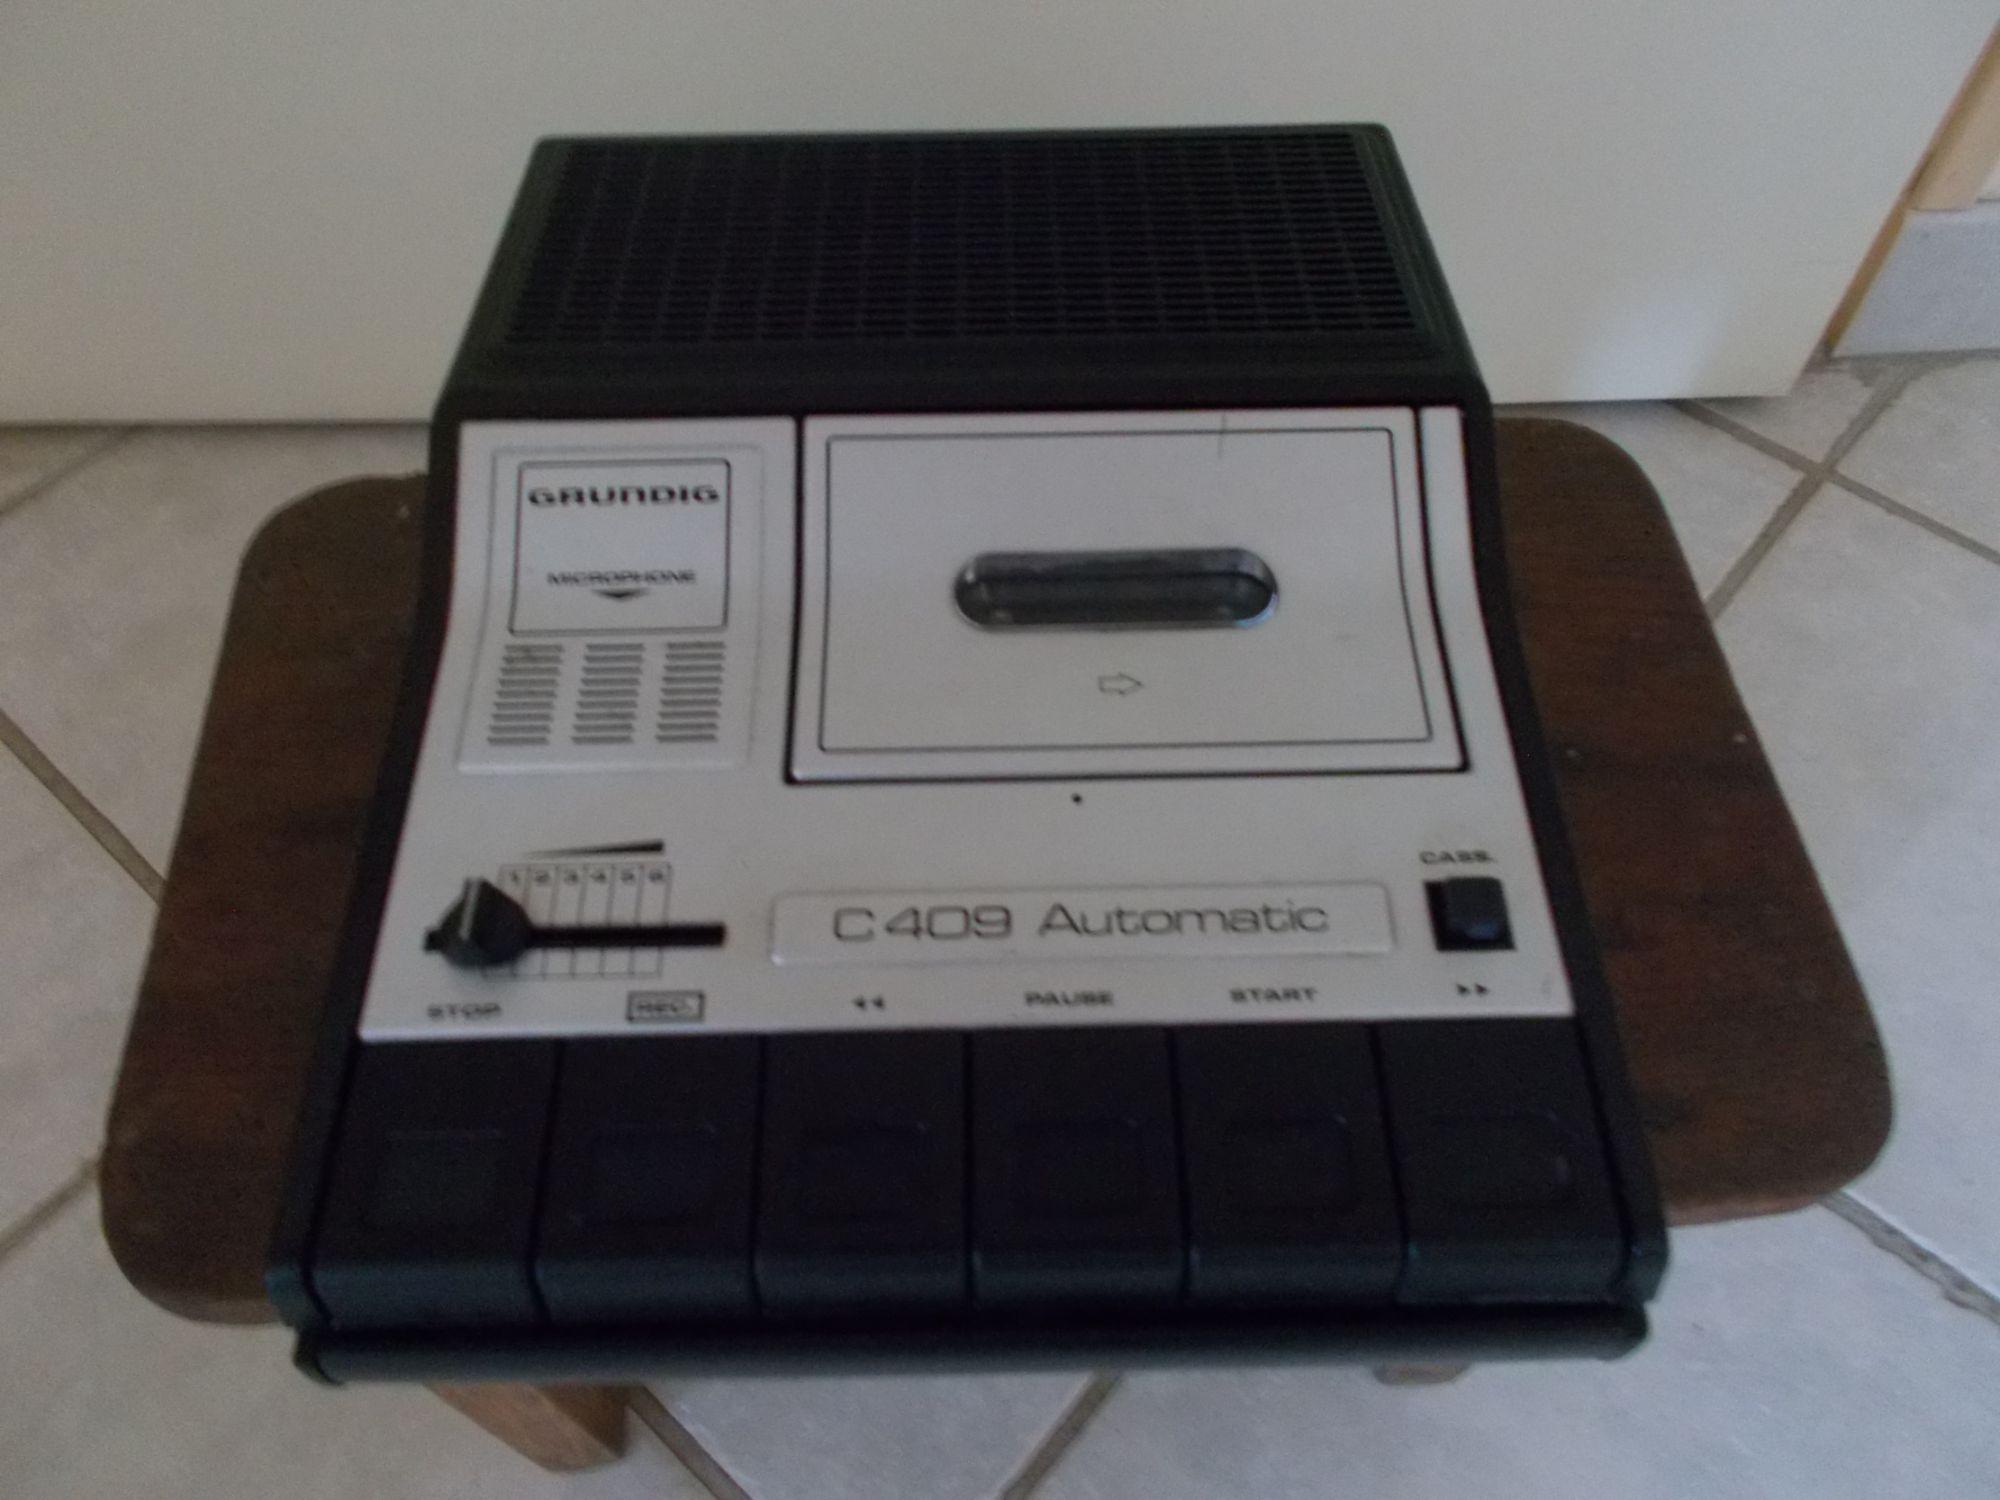 lecteur enregistreur cassette audio grundig c 409 automatic